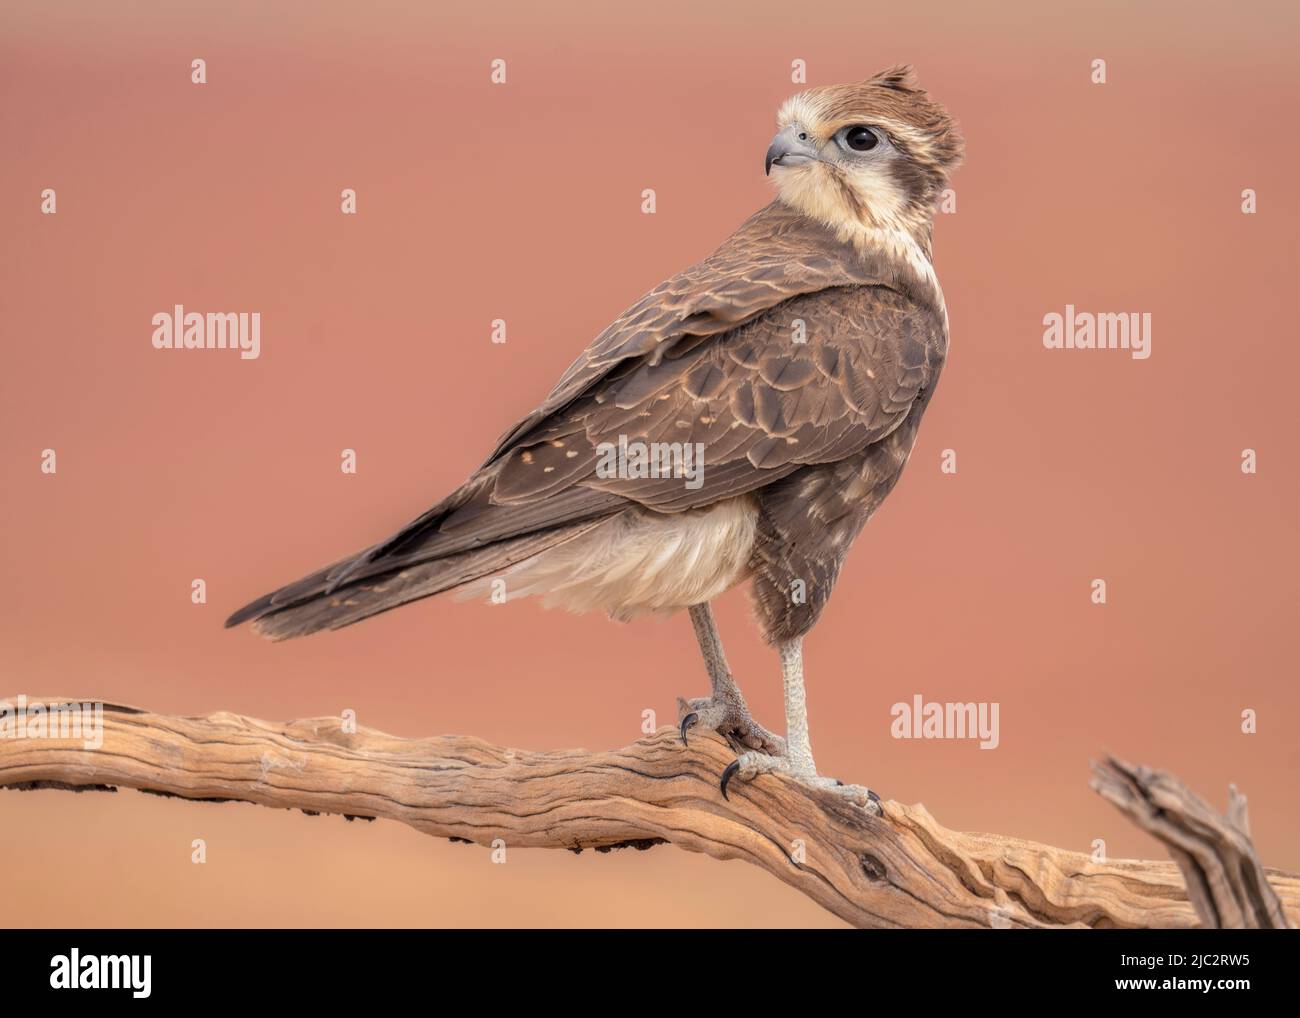 Close-up of a Wild brown falcon (Falco berigora) perched on a branch, Australia Stock Photo